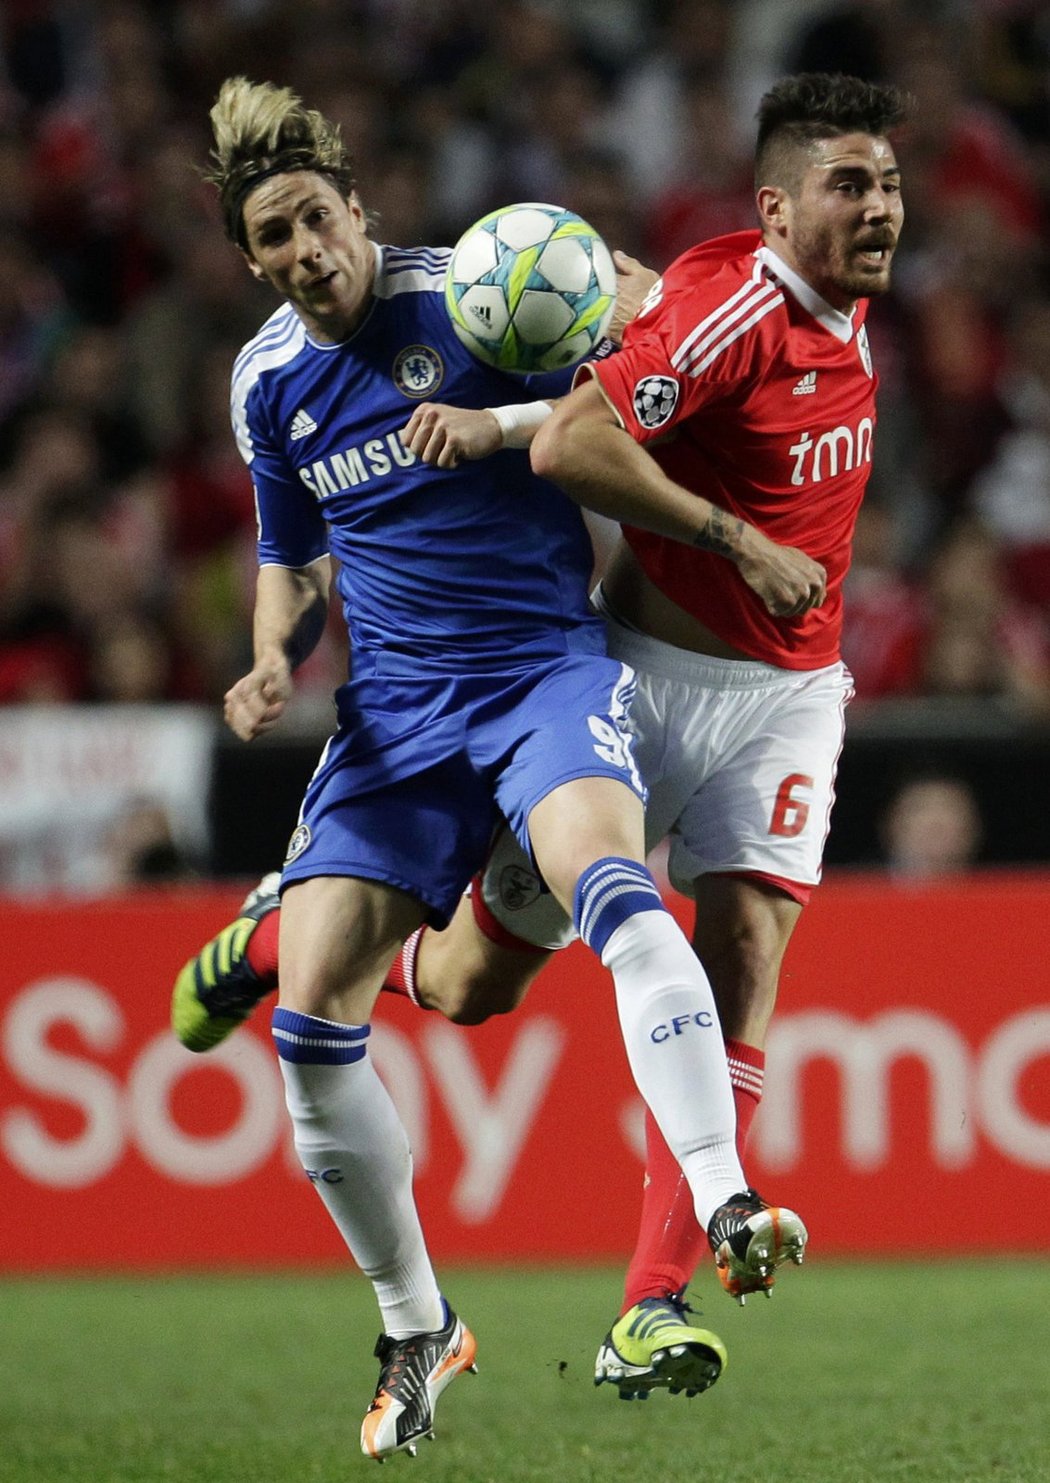 Španělský útočník Chelsea v souboji s Garciou z Benfiky